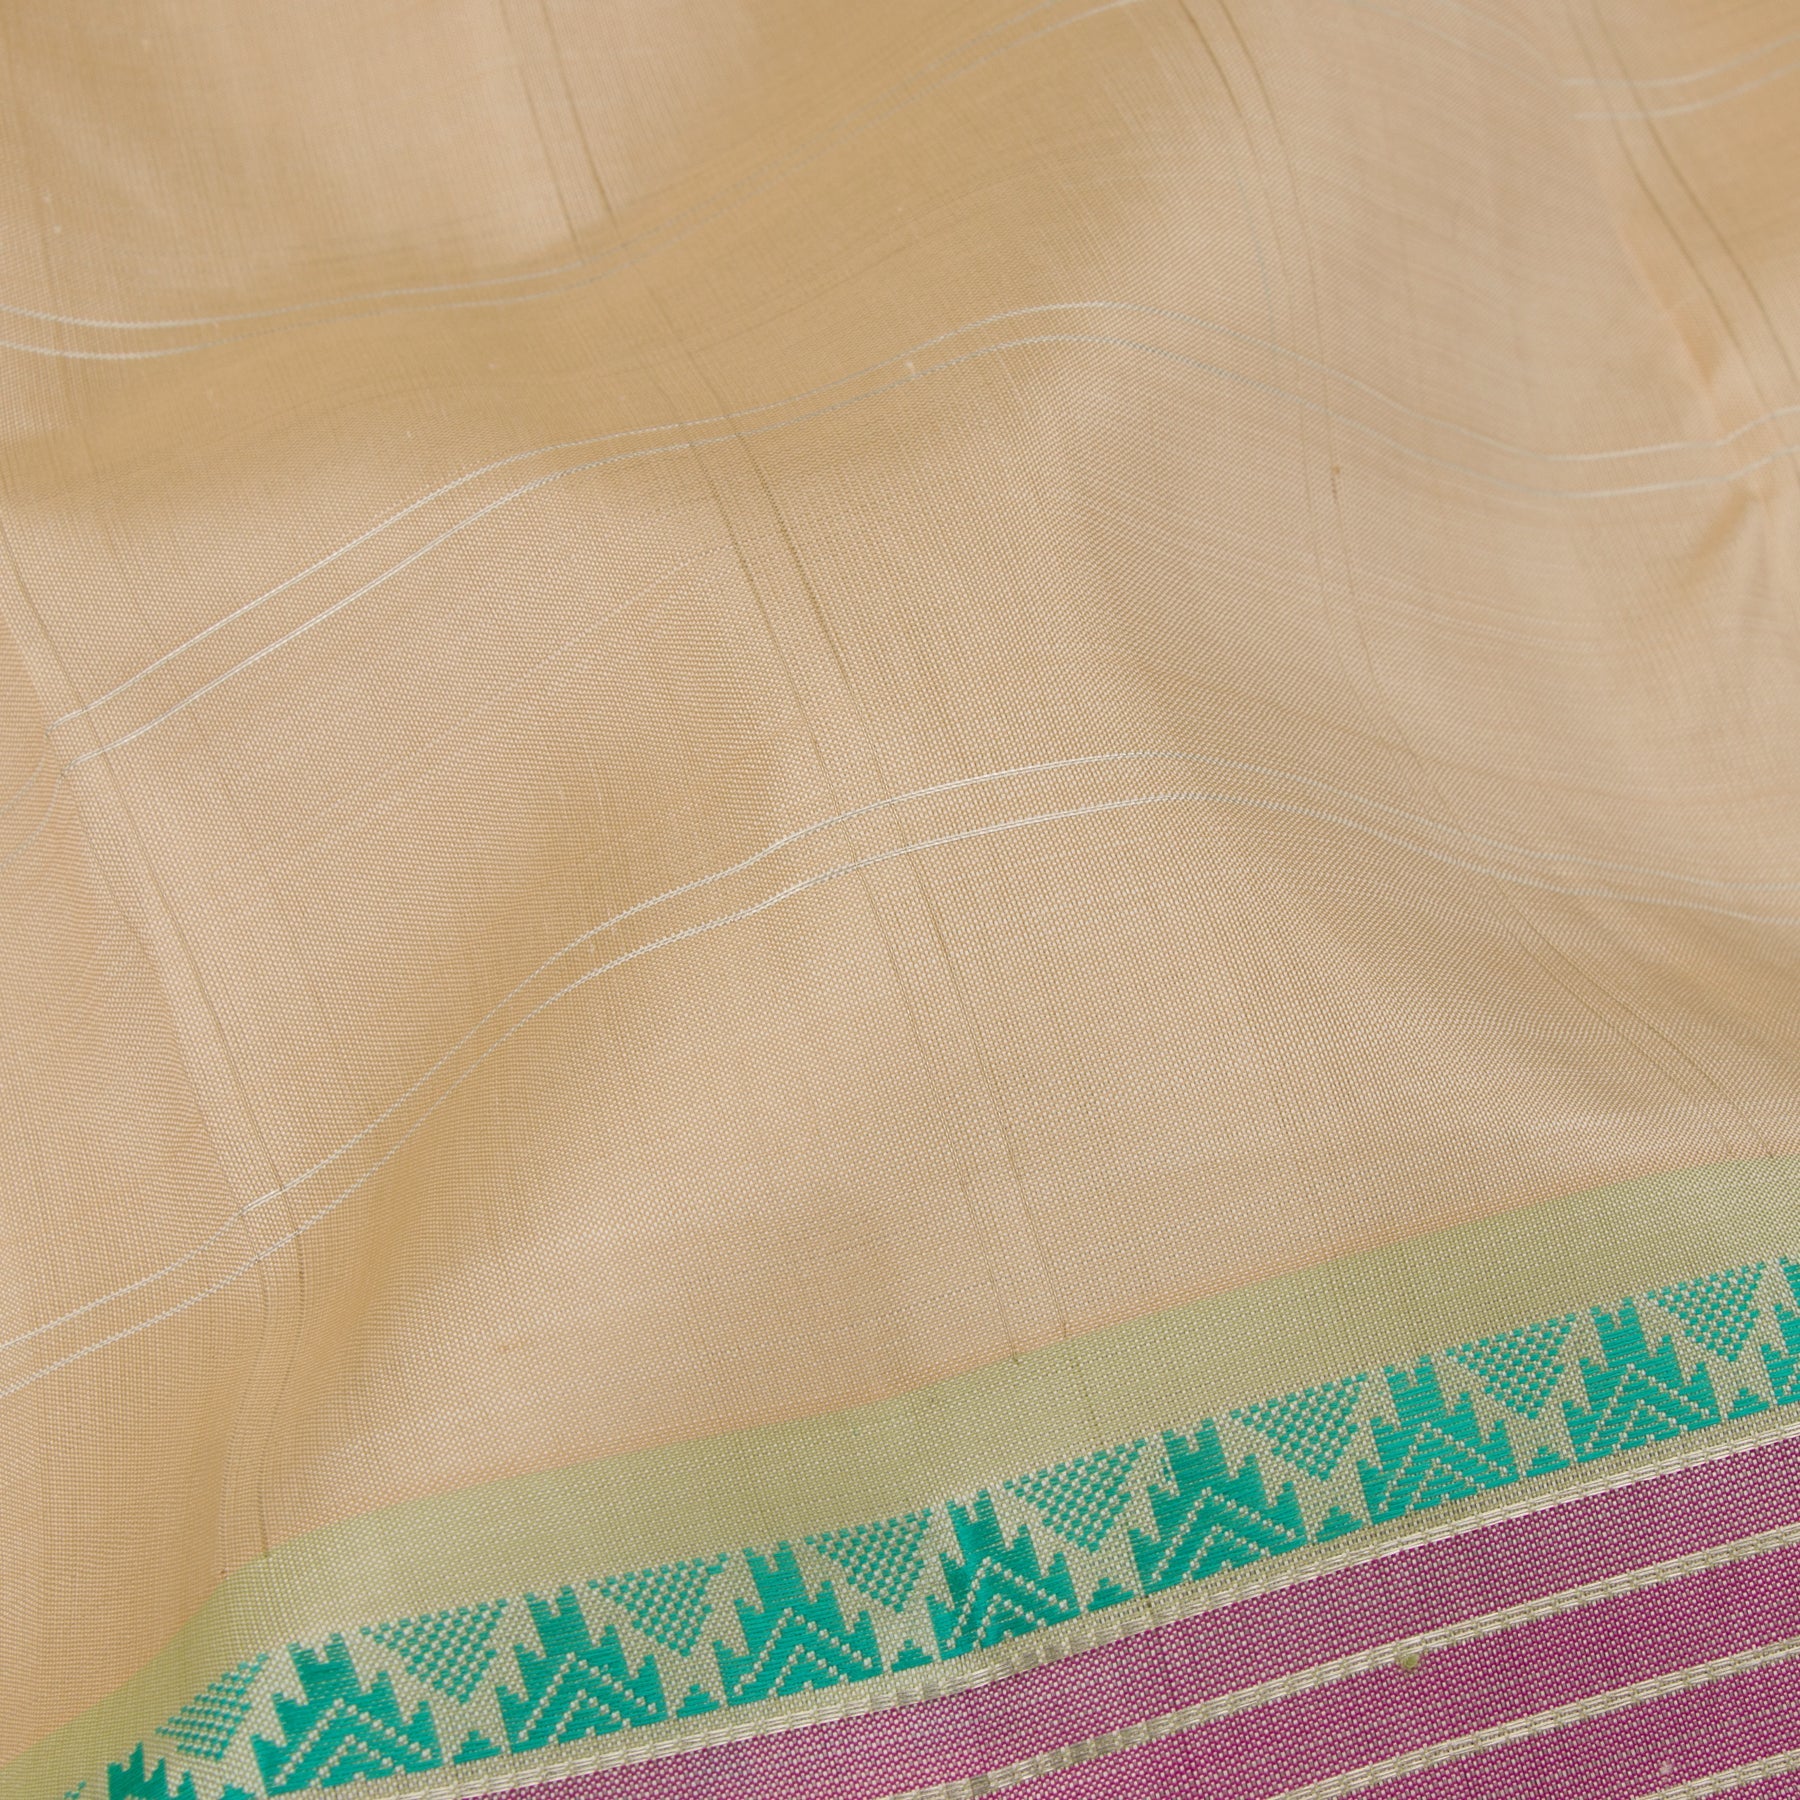 Kanakavalli Kanjivaram Silk Sari 23-520-HS001-01284 - Fabric View